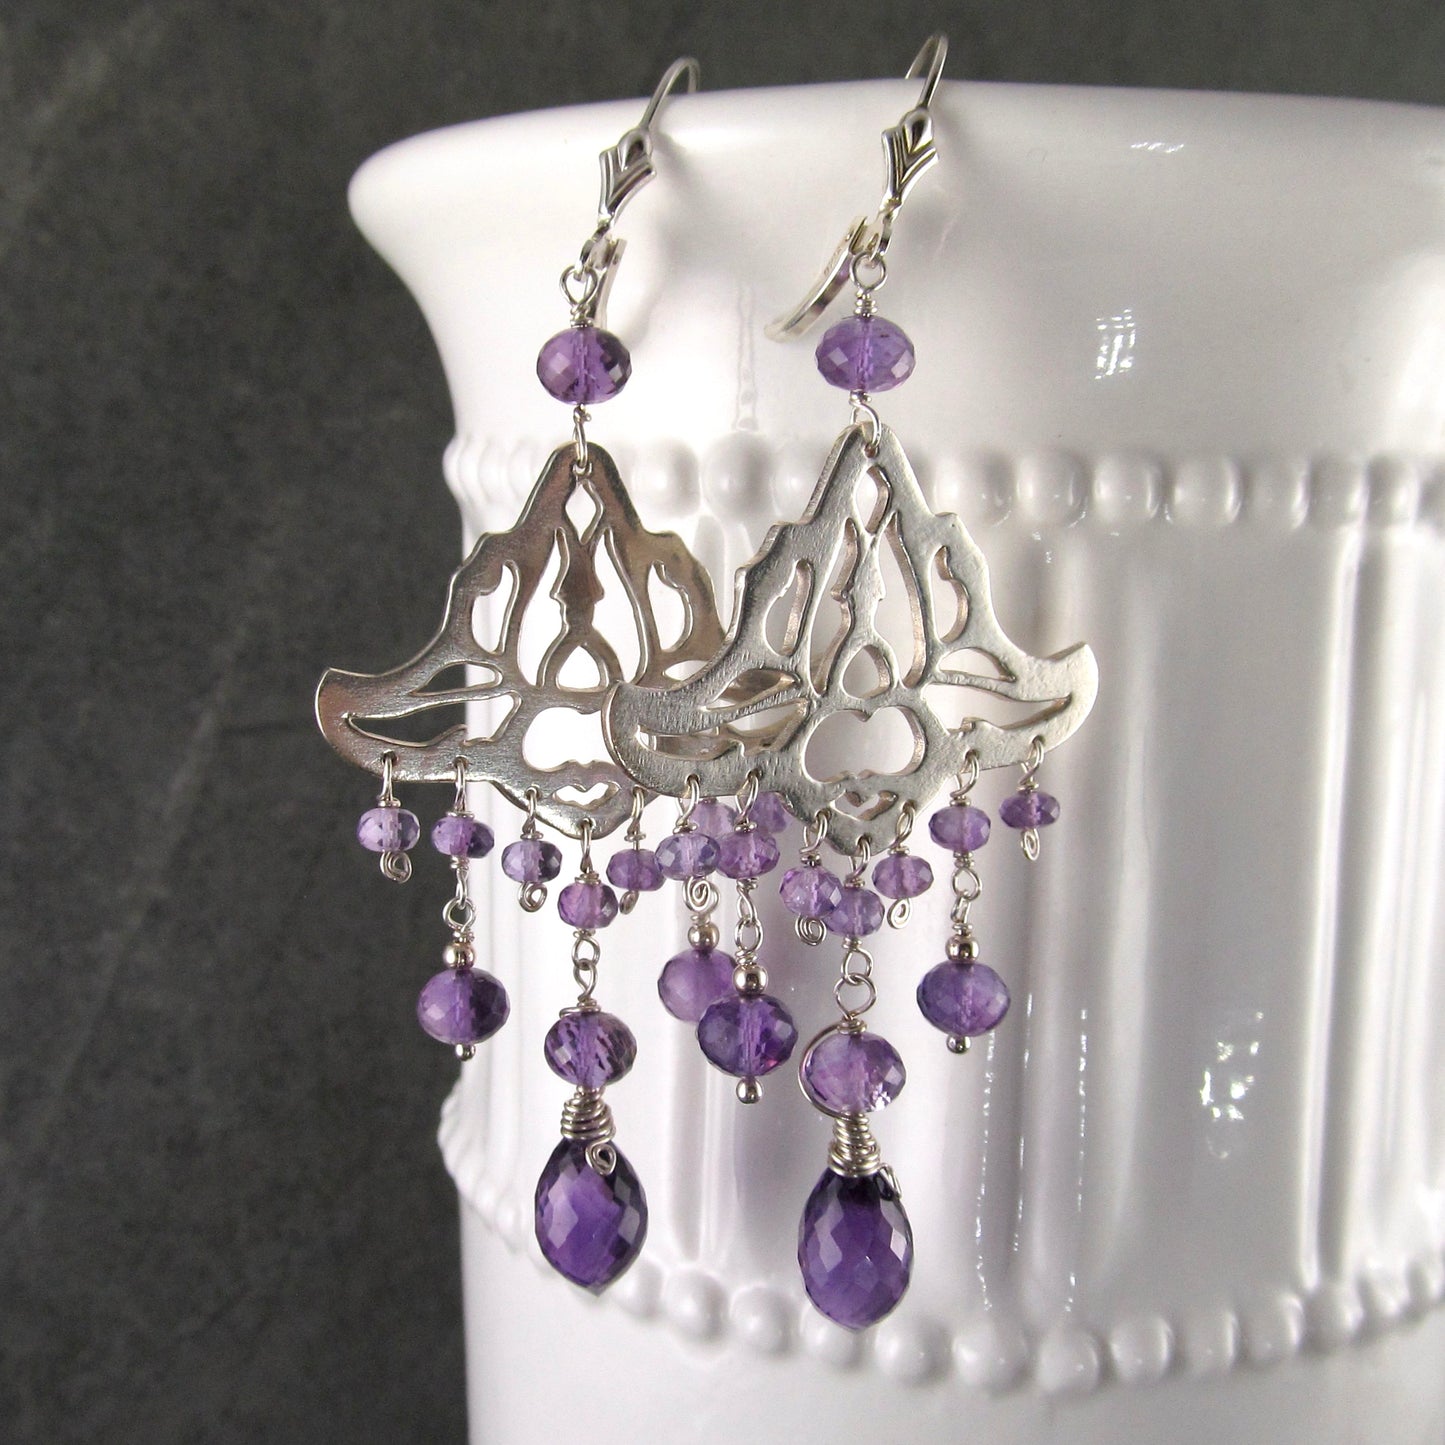 Amethyst chandelier earrings, handmade recycled sterling silver earrings-OOAK February birthstone jewelry